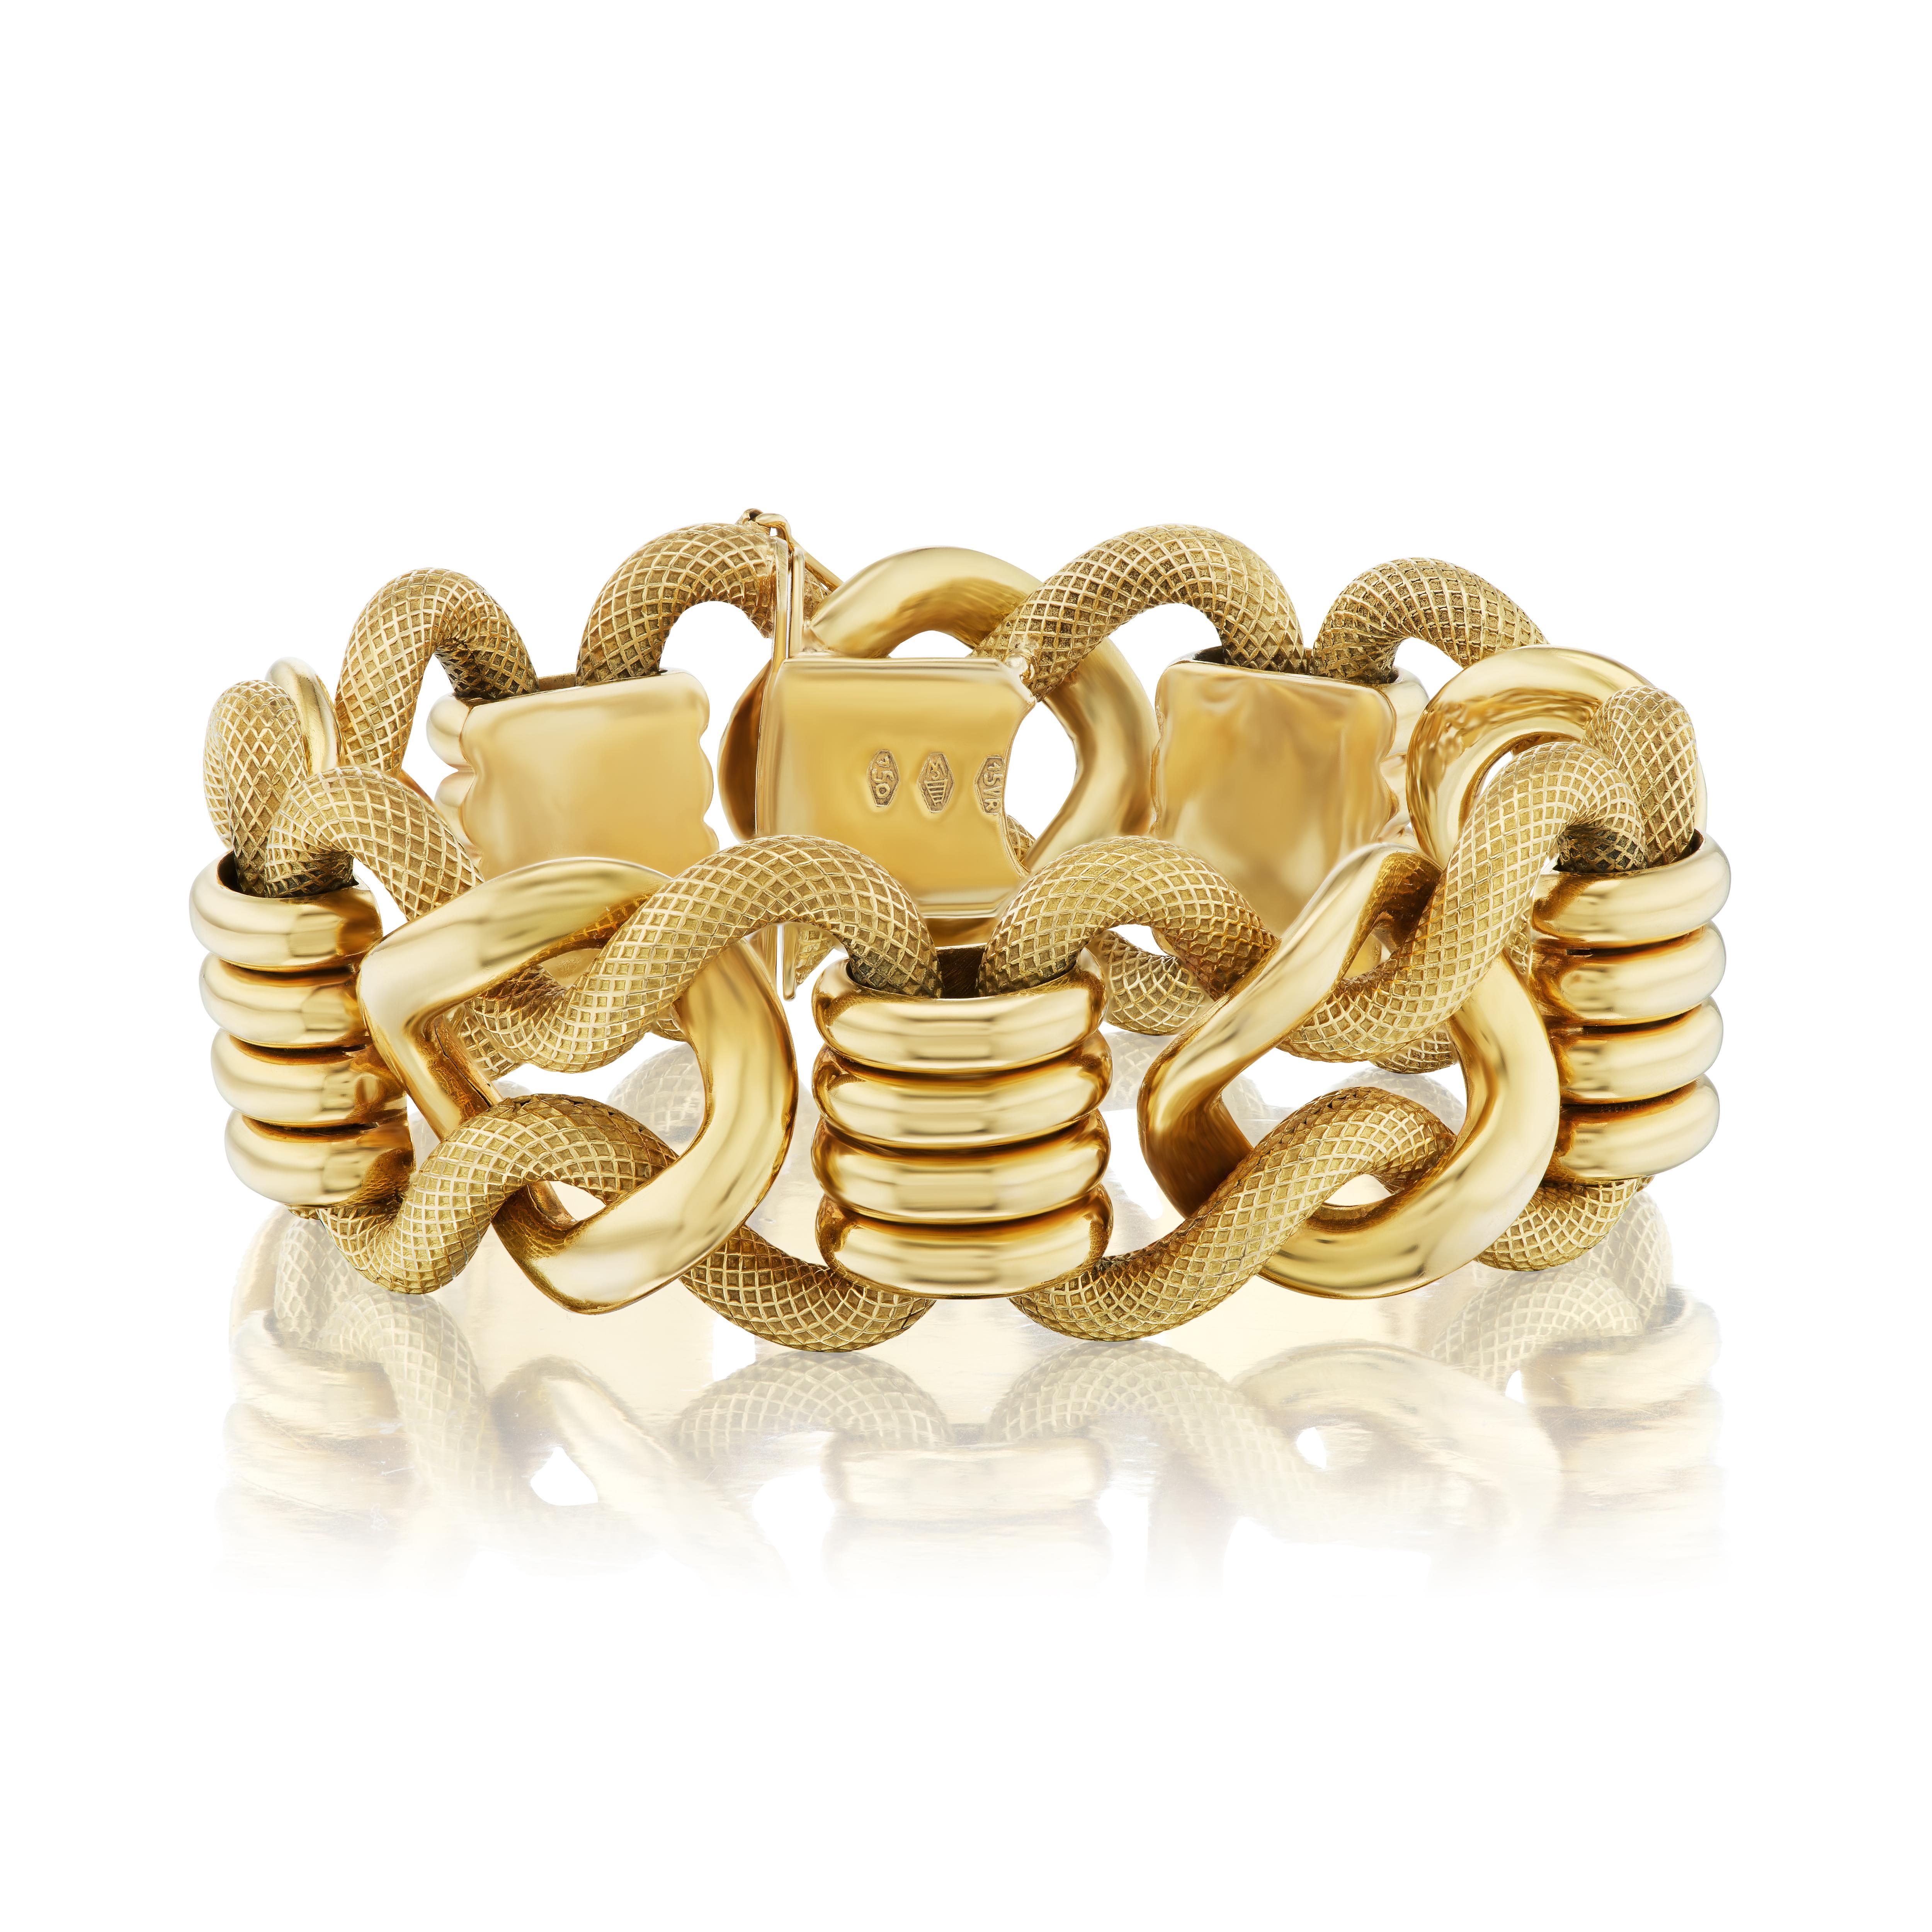 Die Firma Carlo Weingrill geht auf die 1800er Jahre zurück und ist für ihren wunderschönen handgefertigten Goldschmuck bekannt.  In ihrem ursprünglichen Atelier in Verona, Italien, wurden sowohl Stücke unter eigenem Namen als auch für Marken wie